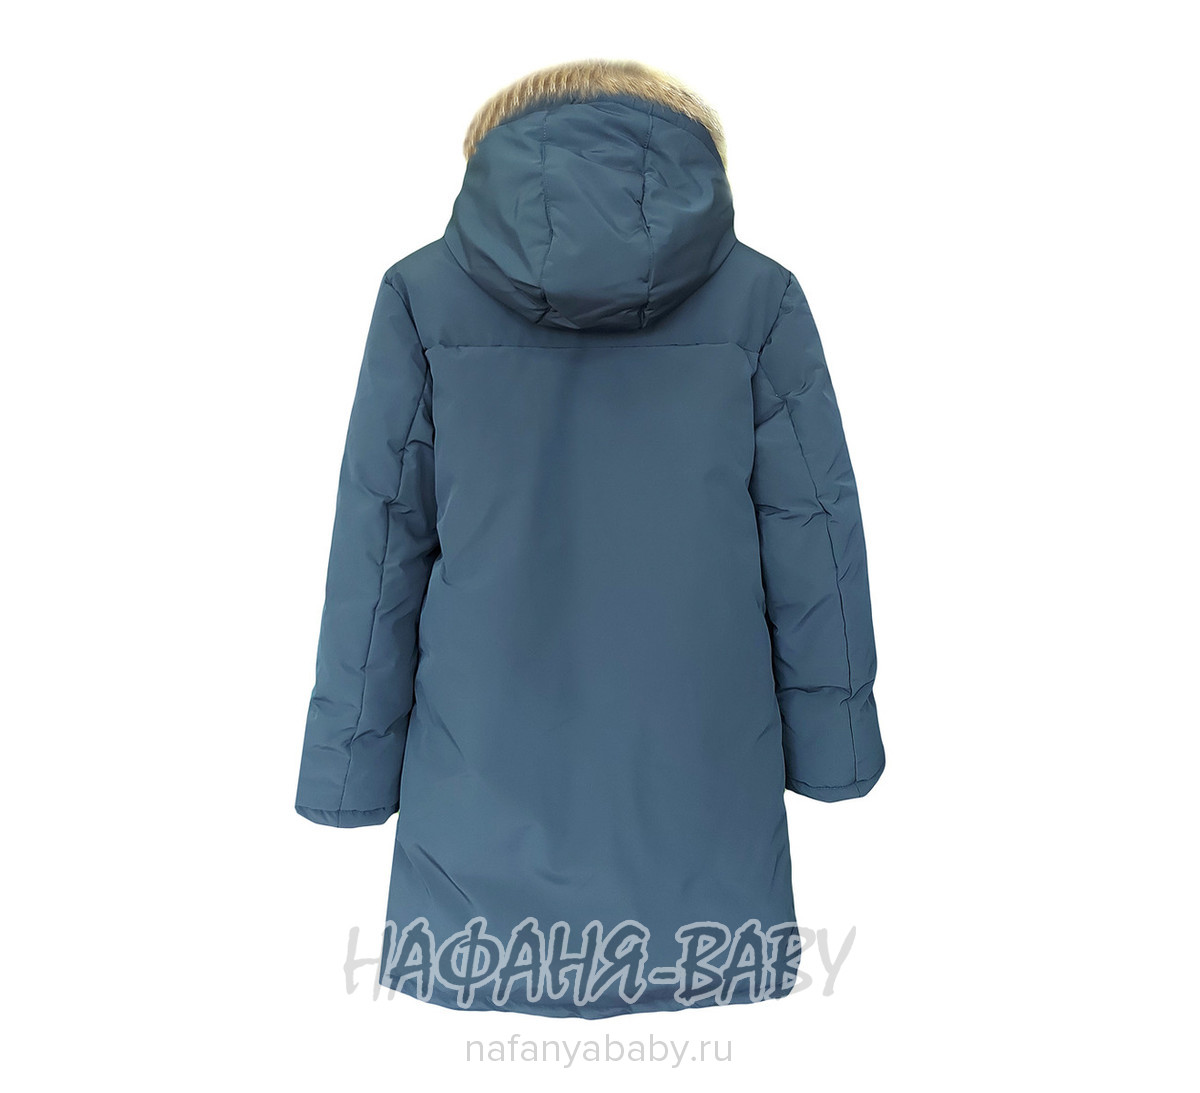 Зимнее пальто для мальчика YUHANG, купить в интернет магазине Нафаня. арт: 6620.